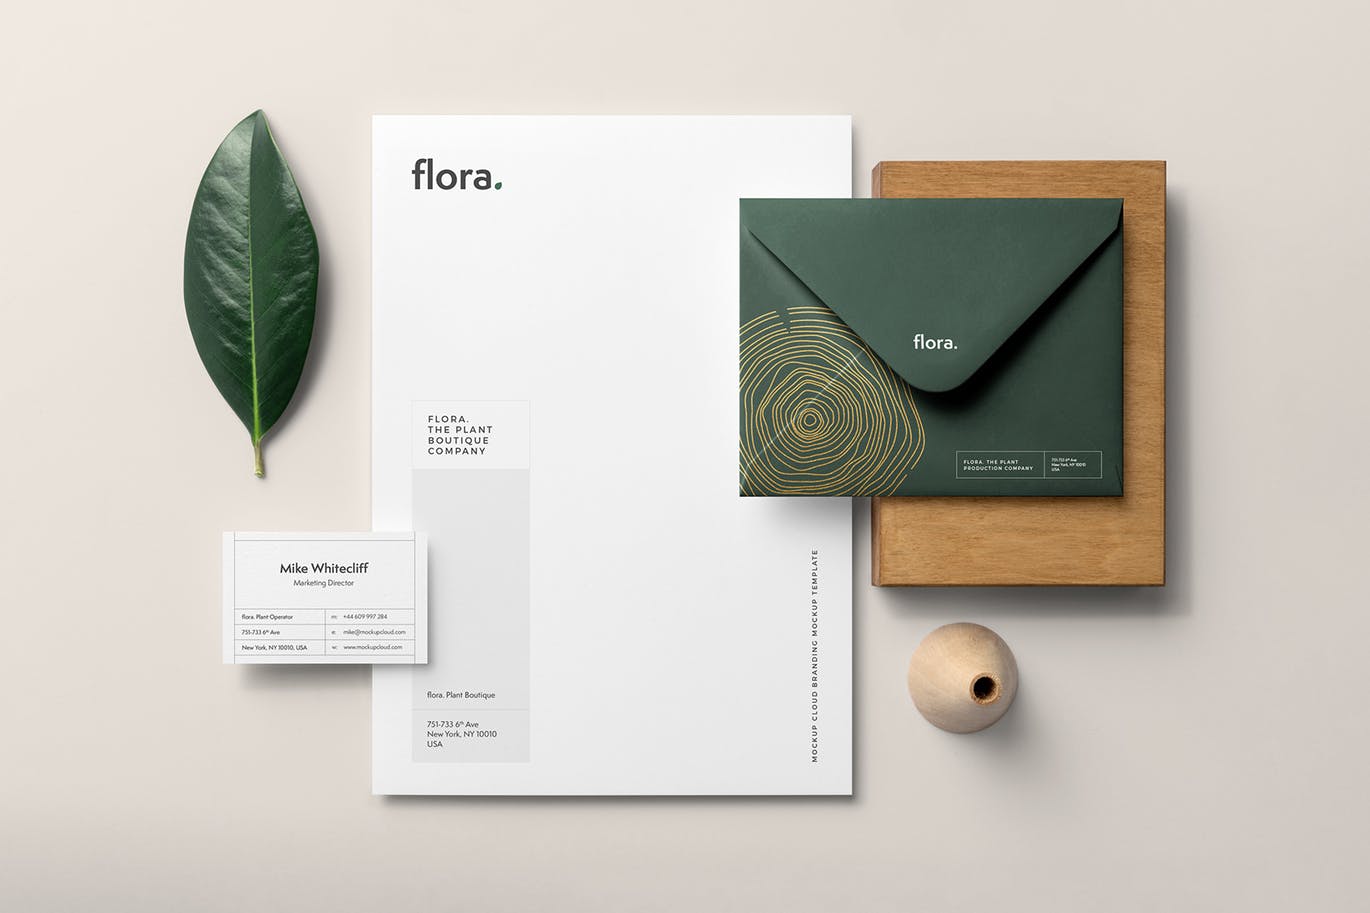 高端企业品牌VI设计效果预览办公用品套装样机v1 Flora Branding Mockup Vol. 1插图(8)